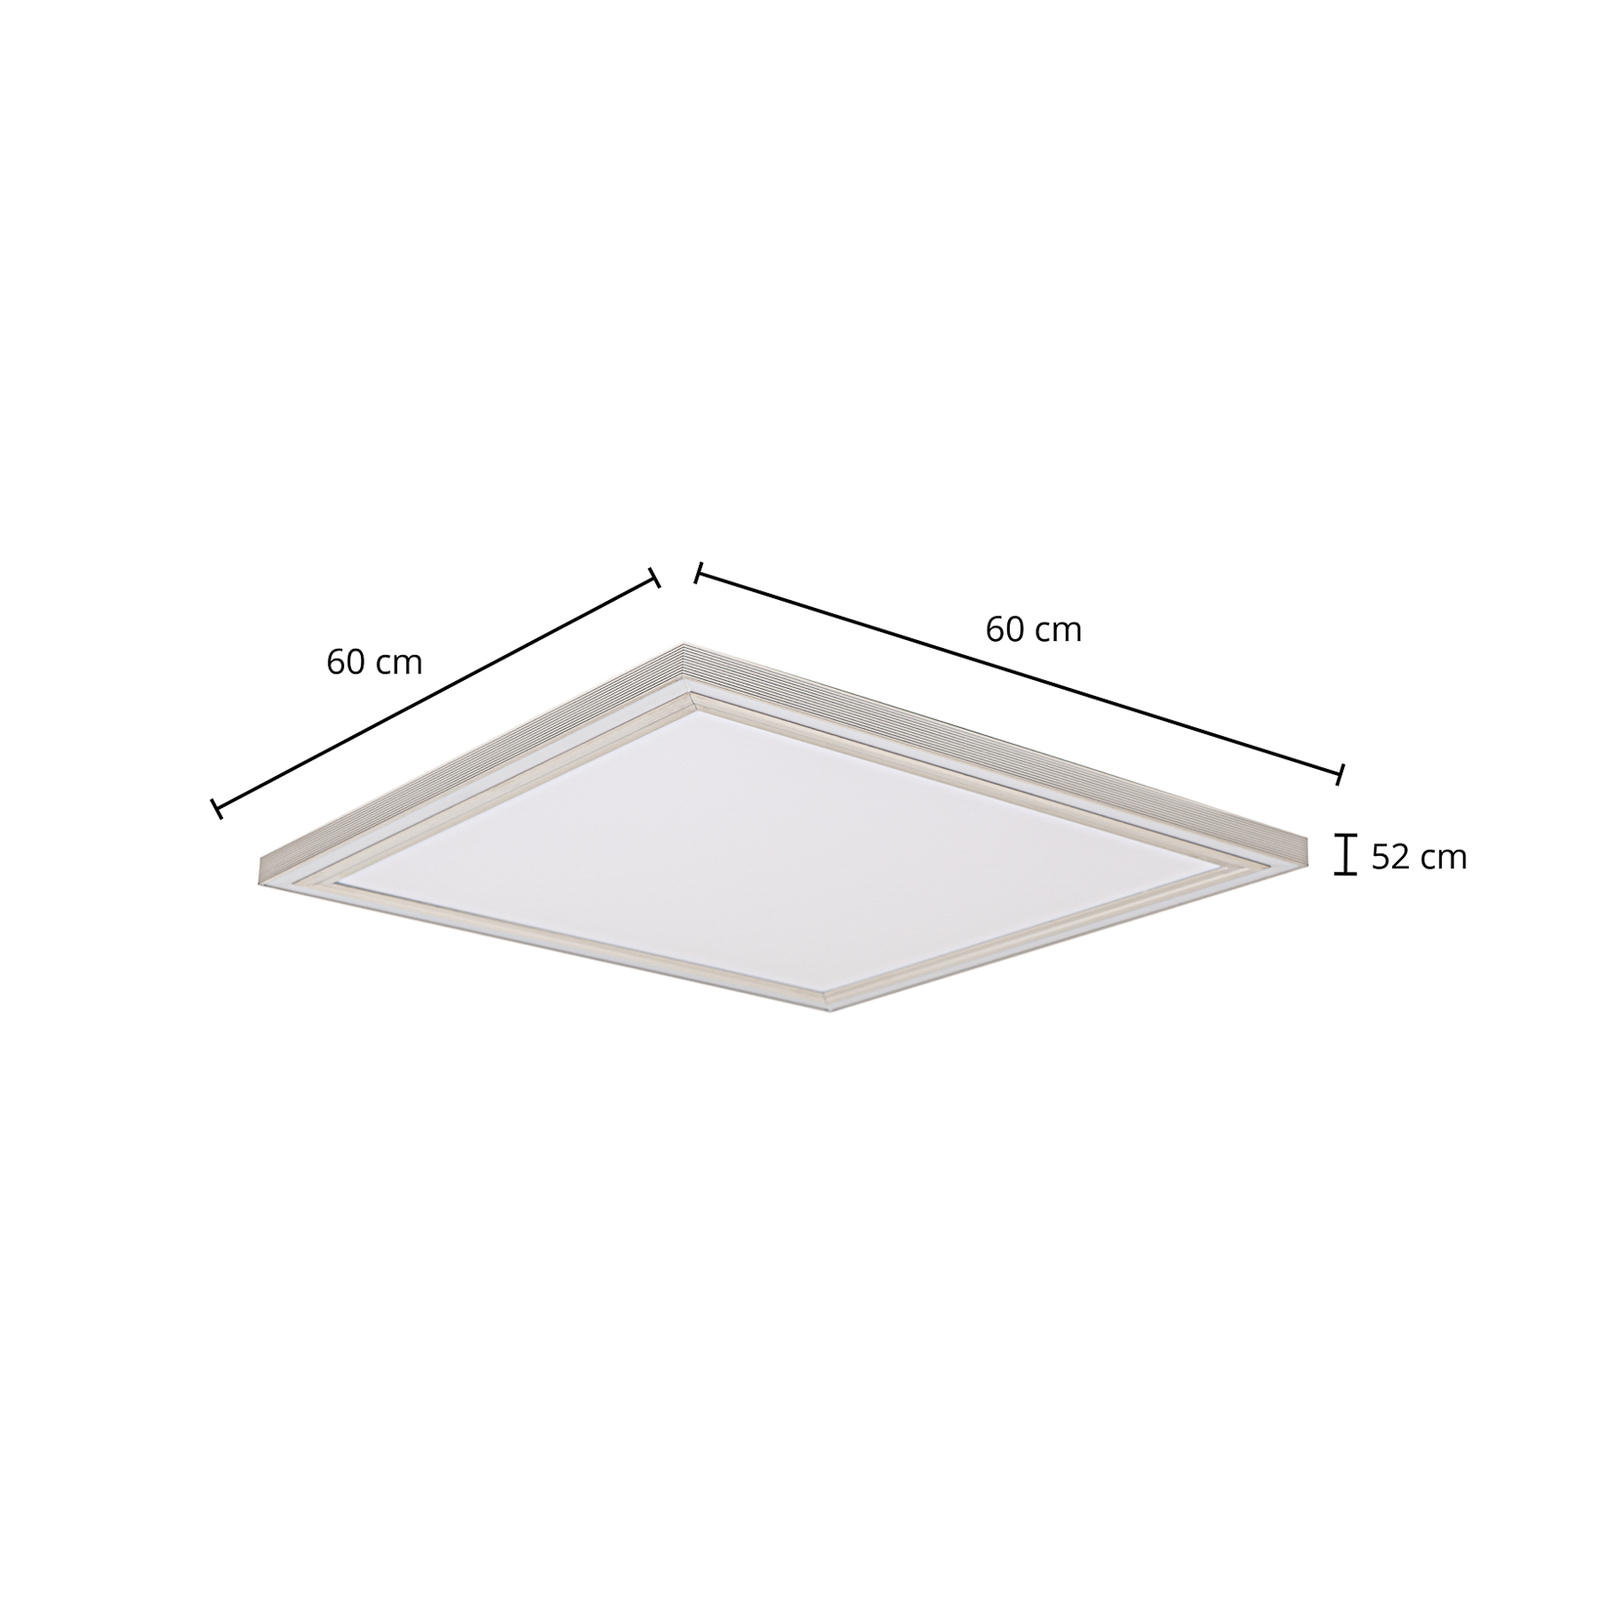 Lucande Melistro LED-Deckenlampe, RGB, eckig